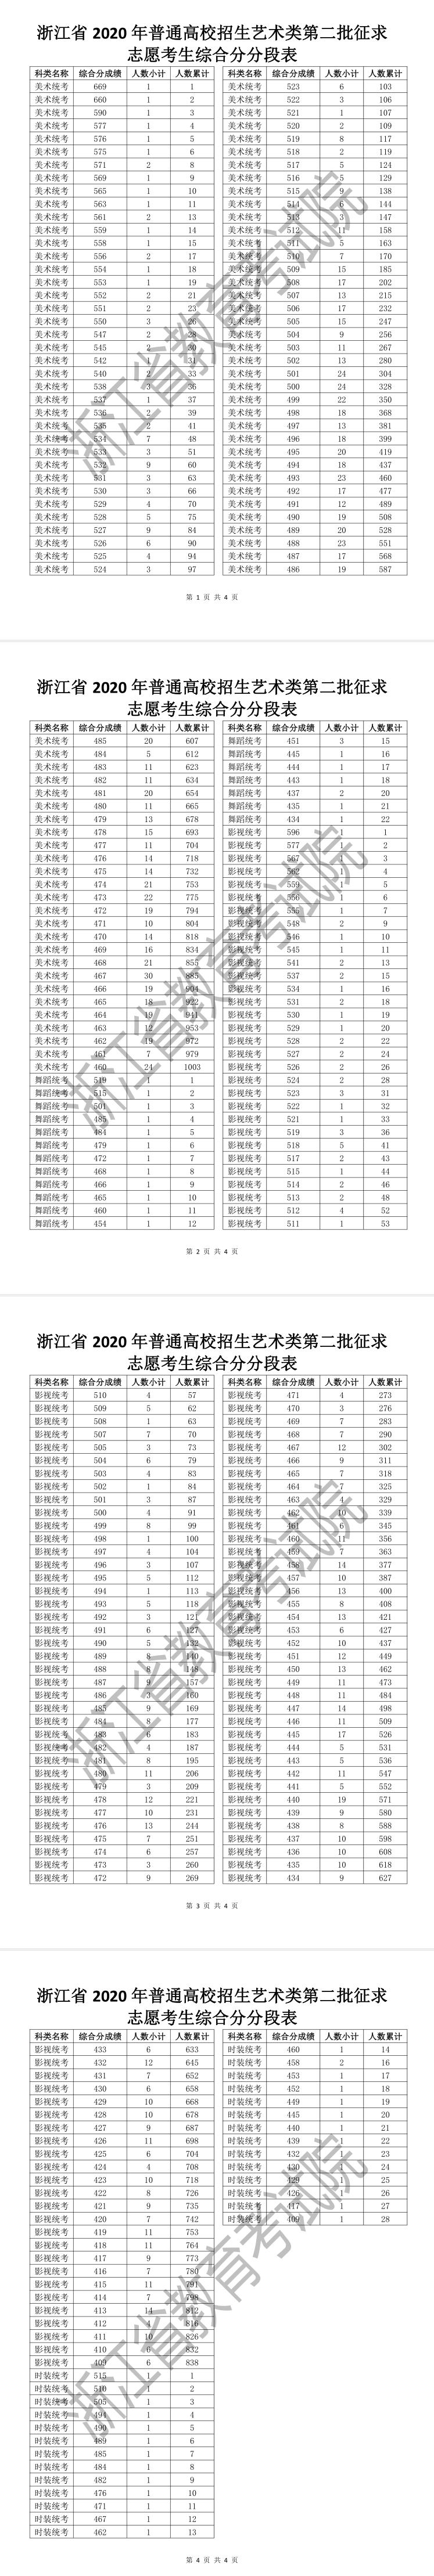 浙江省2020年普通高校招生艺术类第二批征求志愿考生综合分分段表